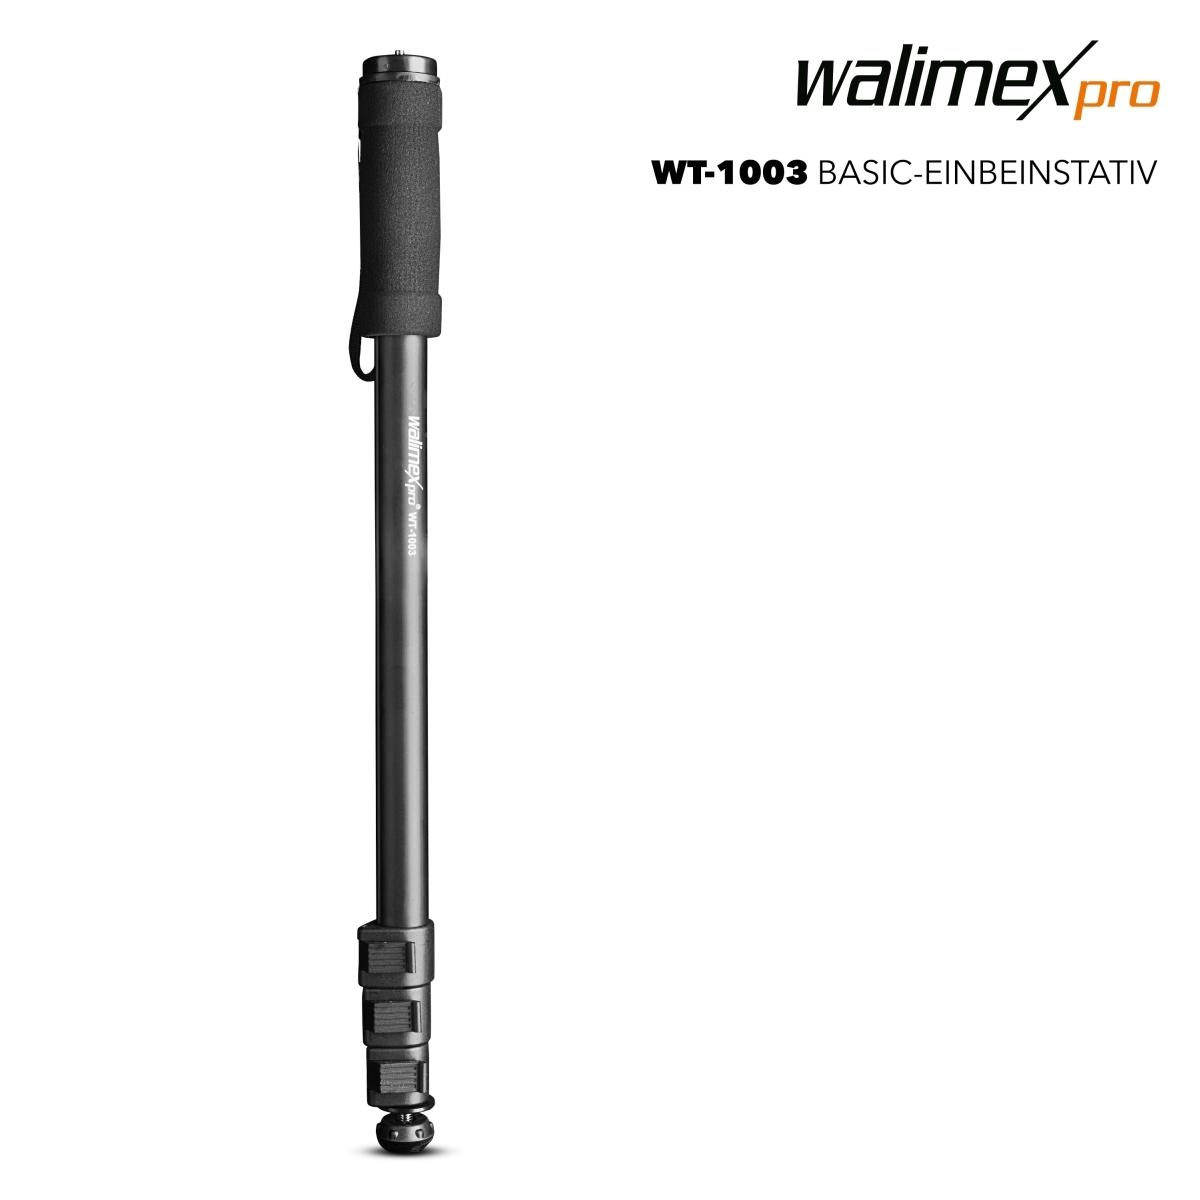 Walimex pro WT-1003 Basic Einbeinstativ 171cm